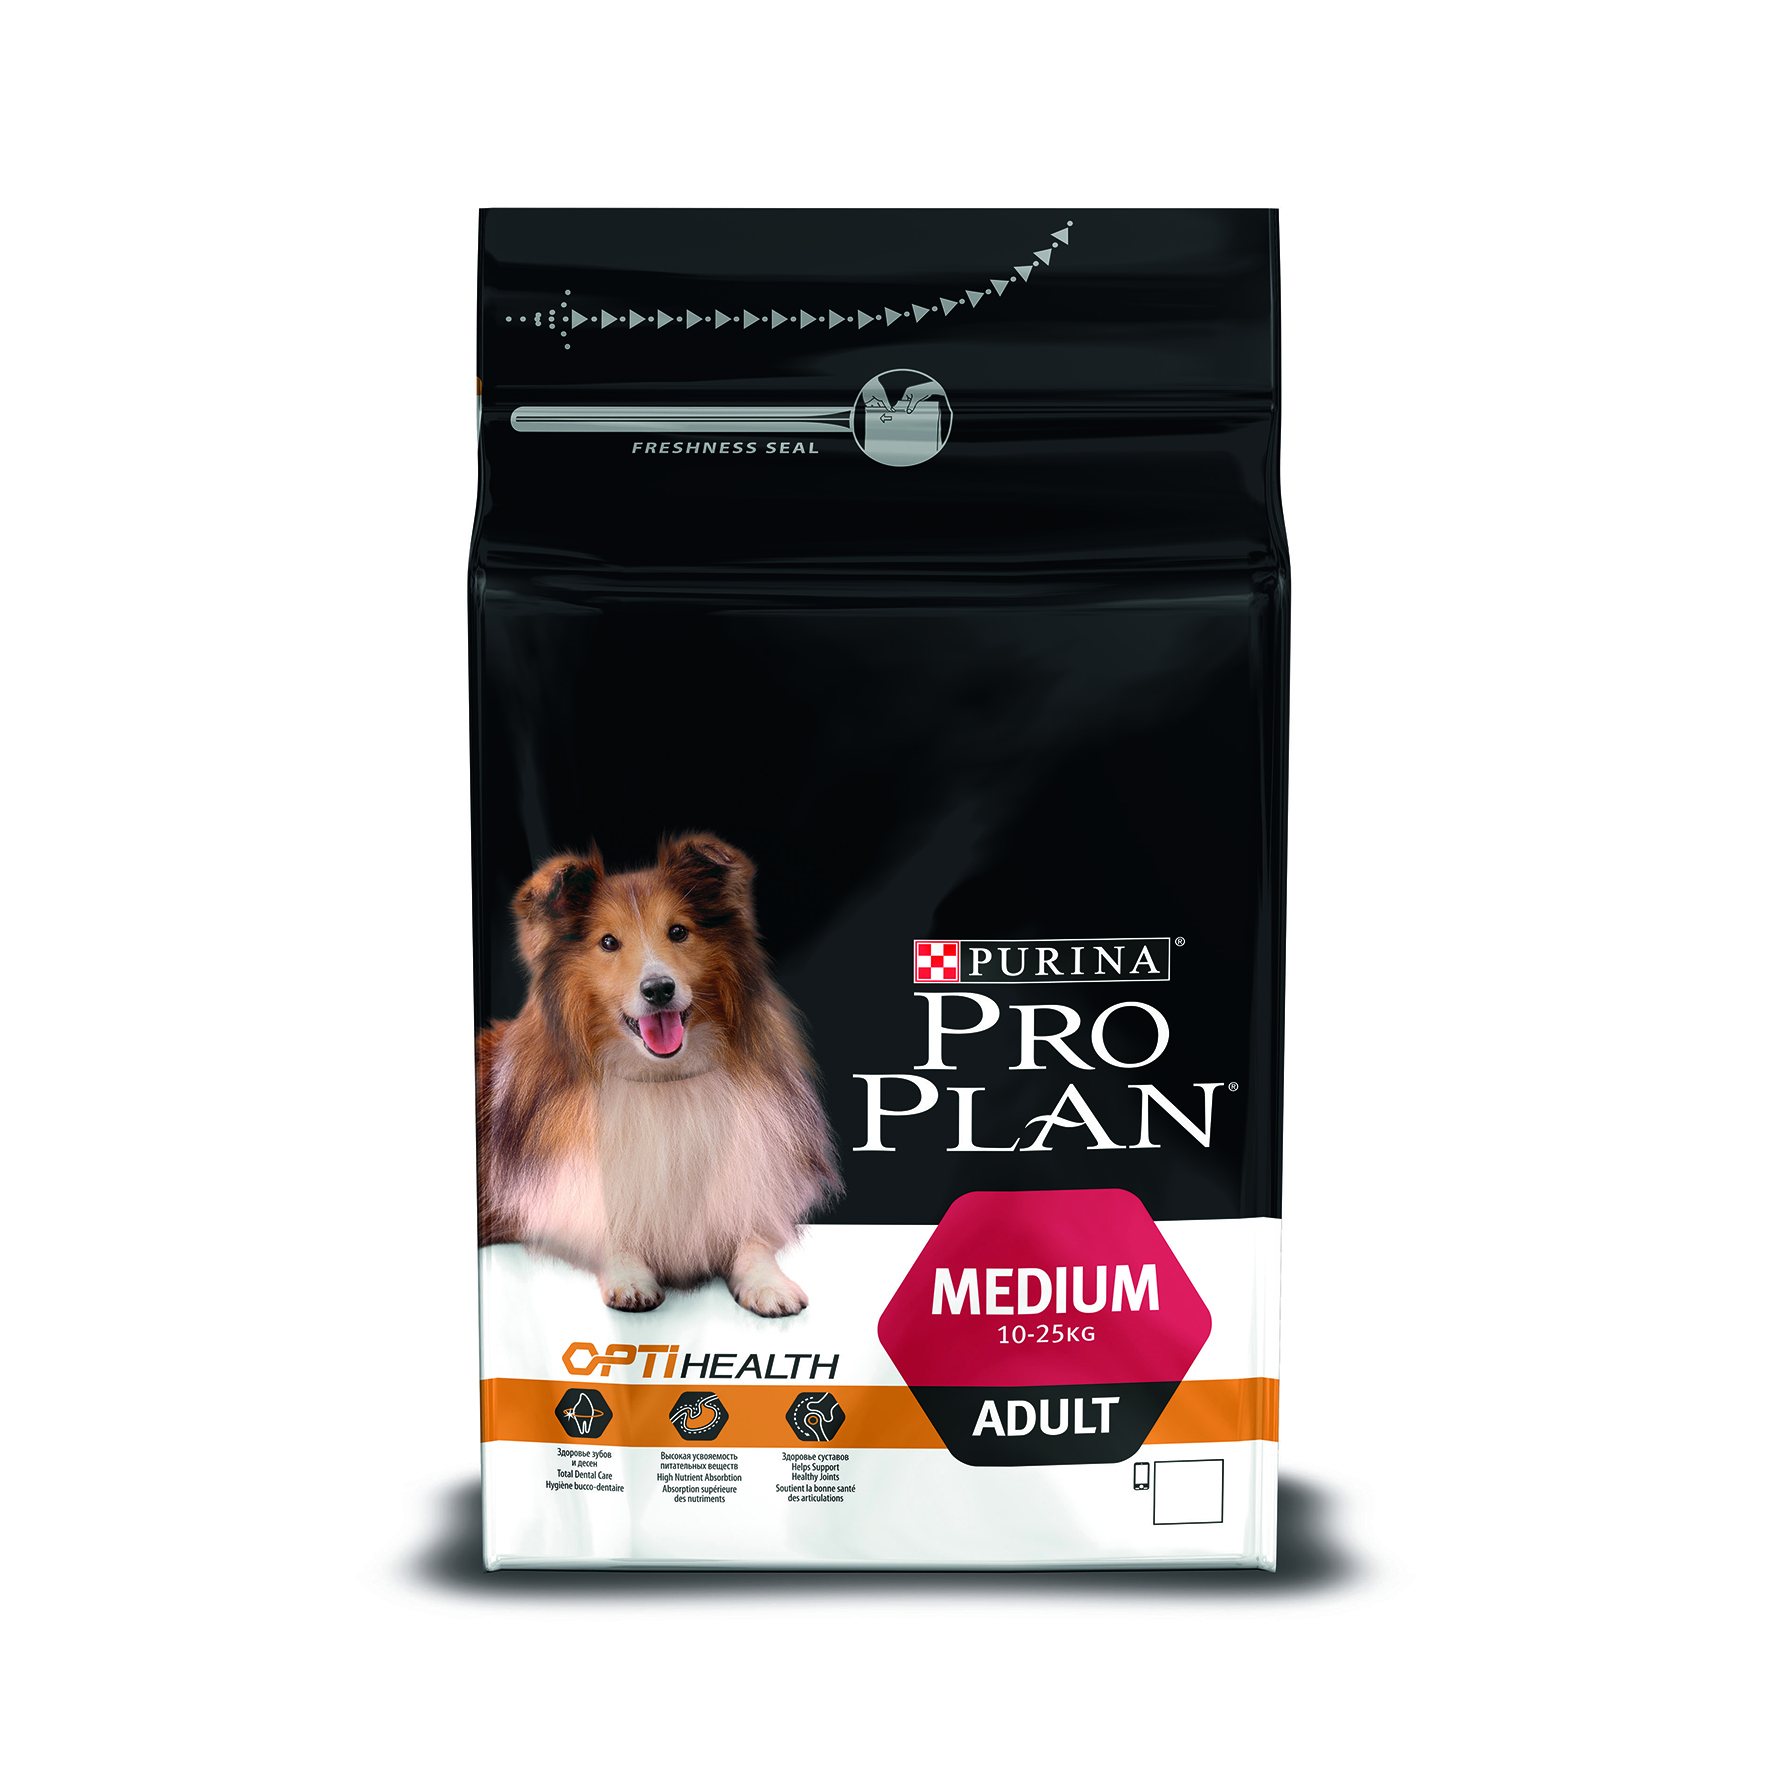 Линейка кормов для собак. Purina Pro Plan. Проплан для щенков средних пород с ягненком. Pro Plan sensitive Skin для собак 18 кг. Purina Pro Plan Medium Puppy.